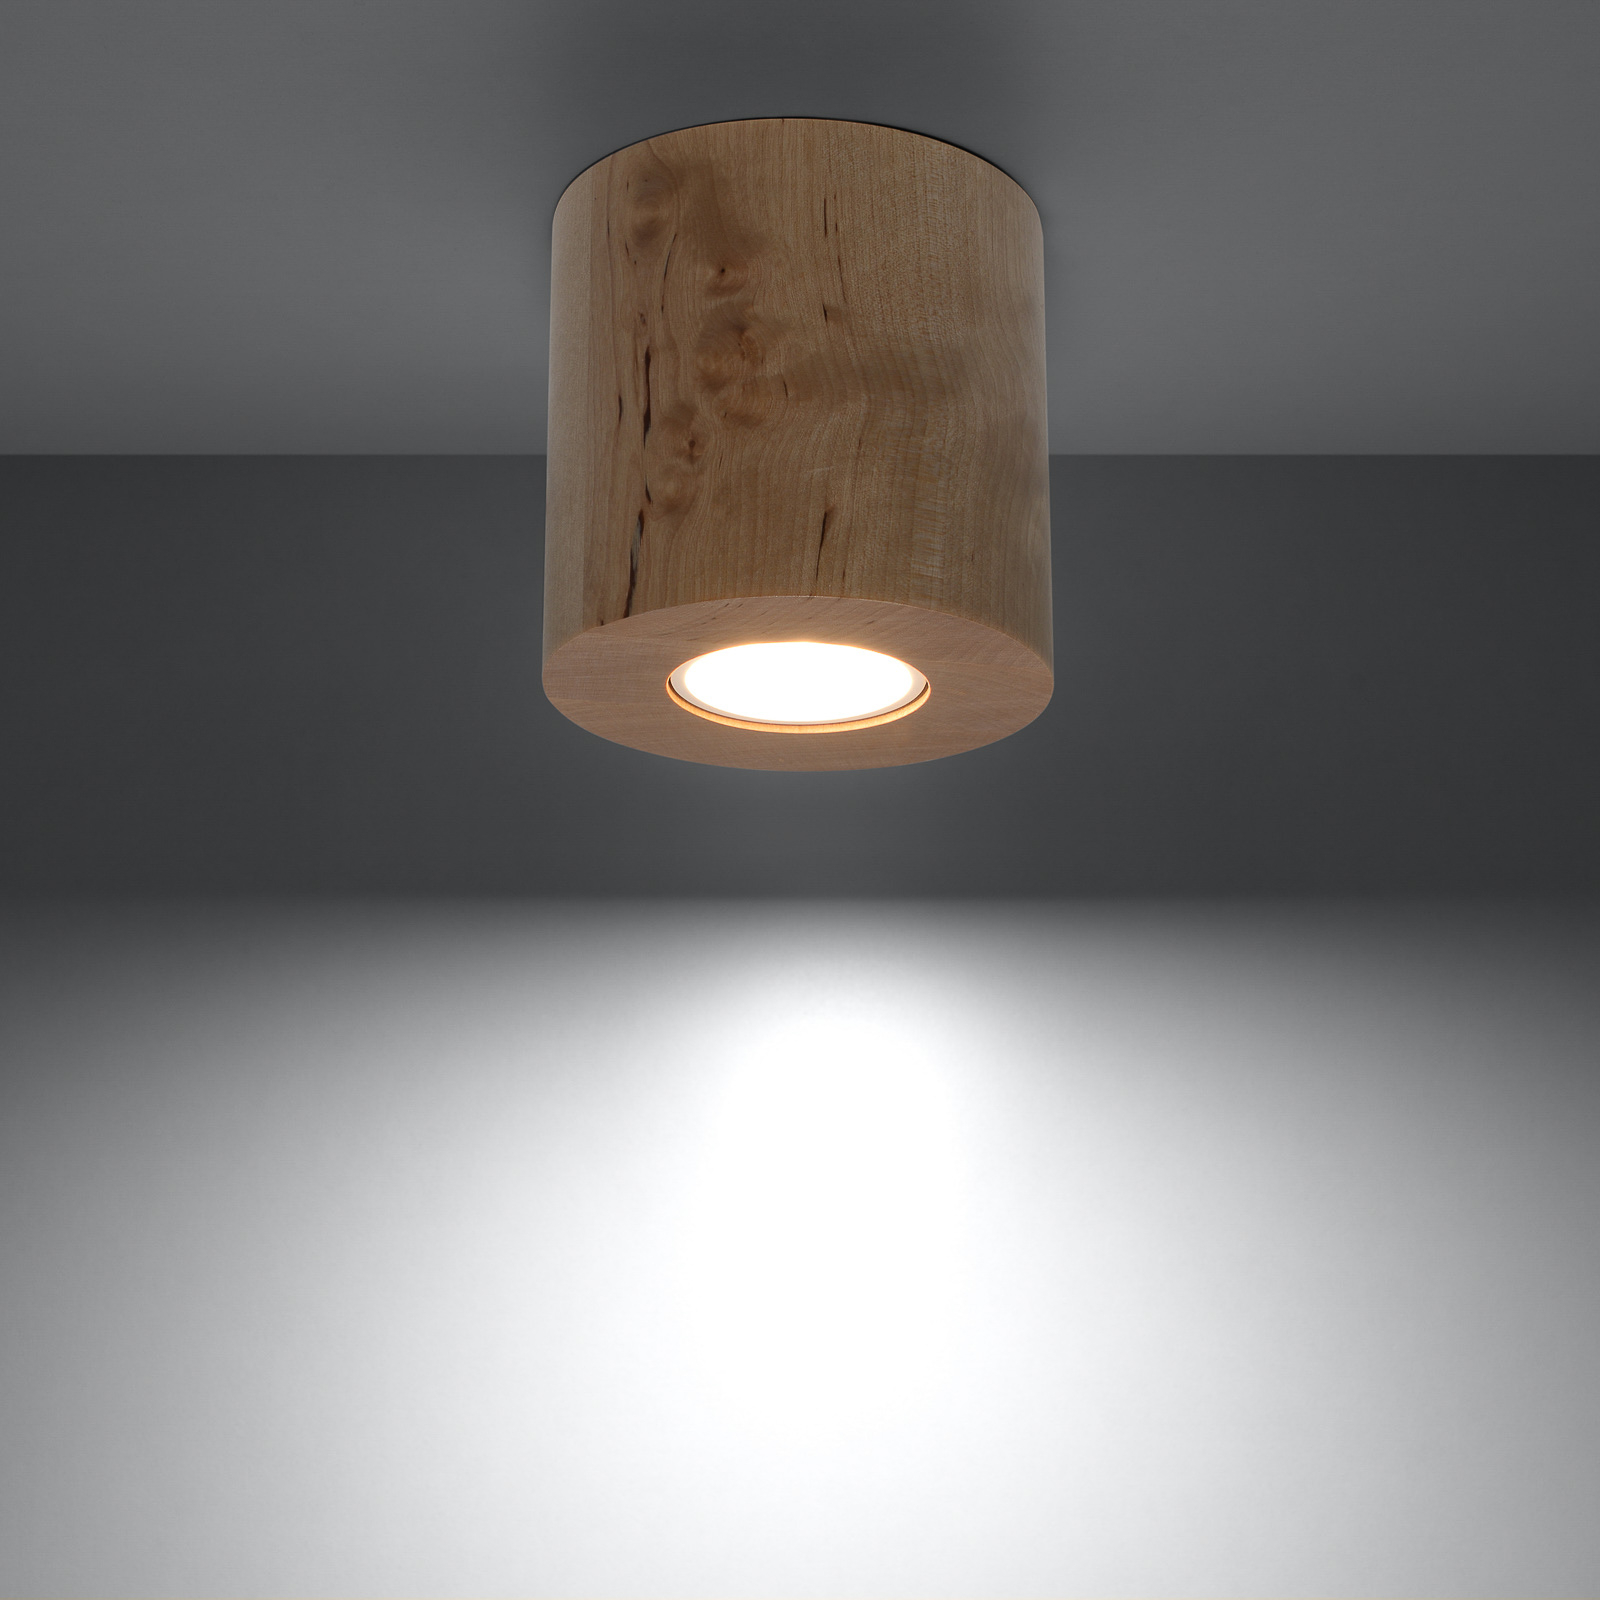 Lampa sufitowa Ara jako walec z drewna